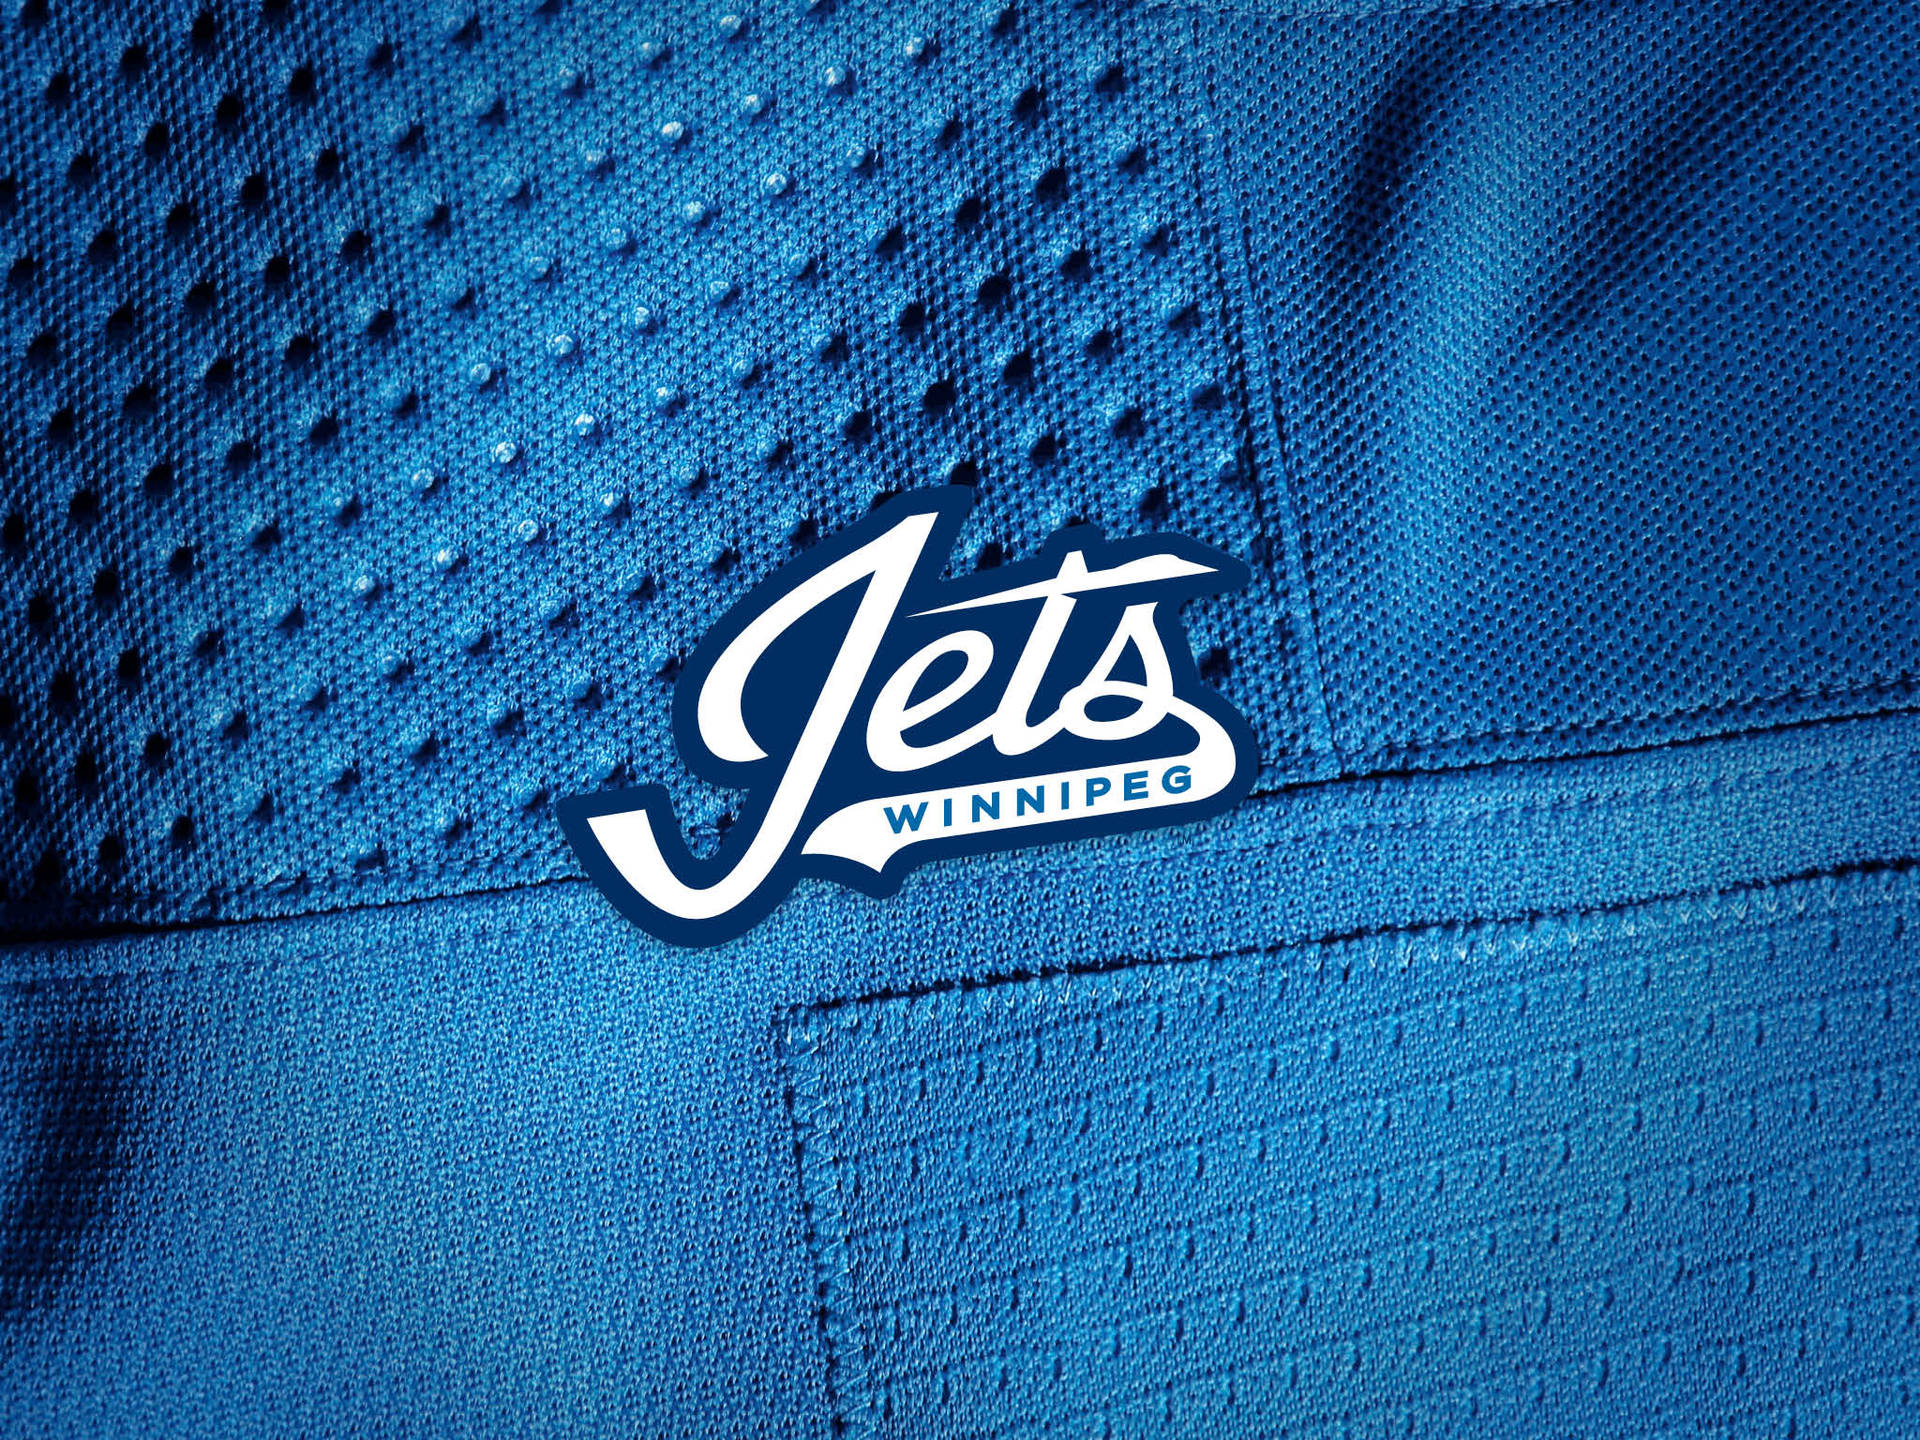 Winnipeg Jets Logo On Jersey Background